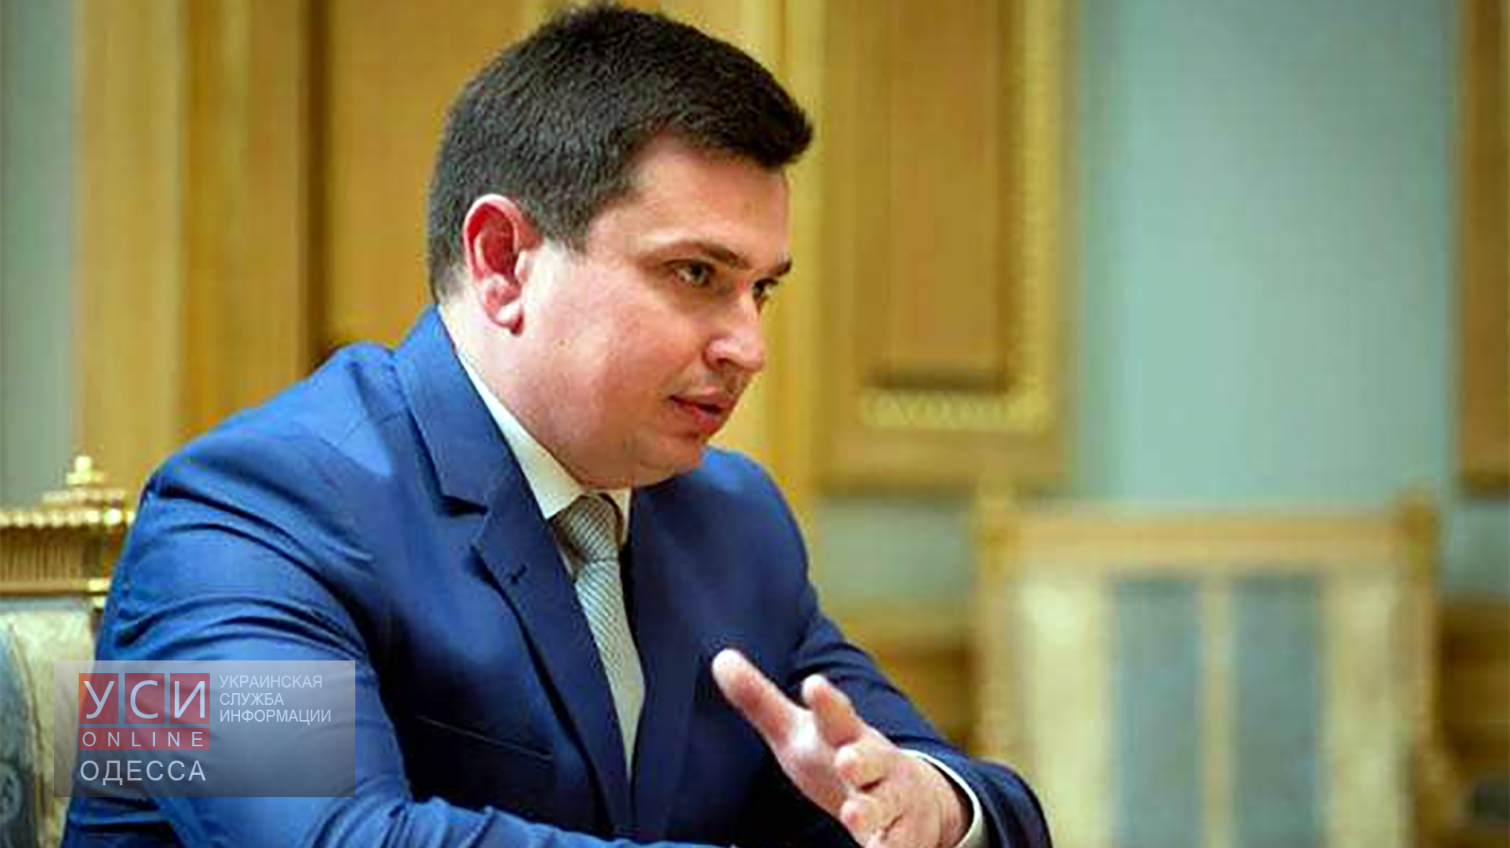 Антикоррупционный прокурор проверит правительство по сигналу Саакашвили «фото»